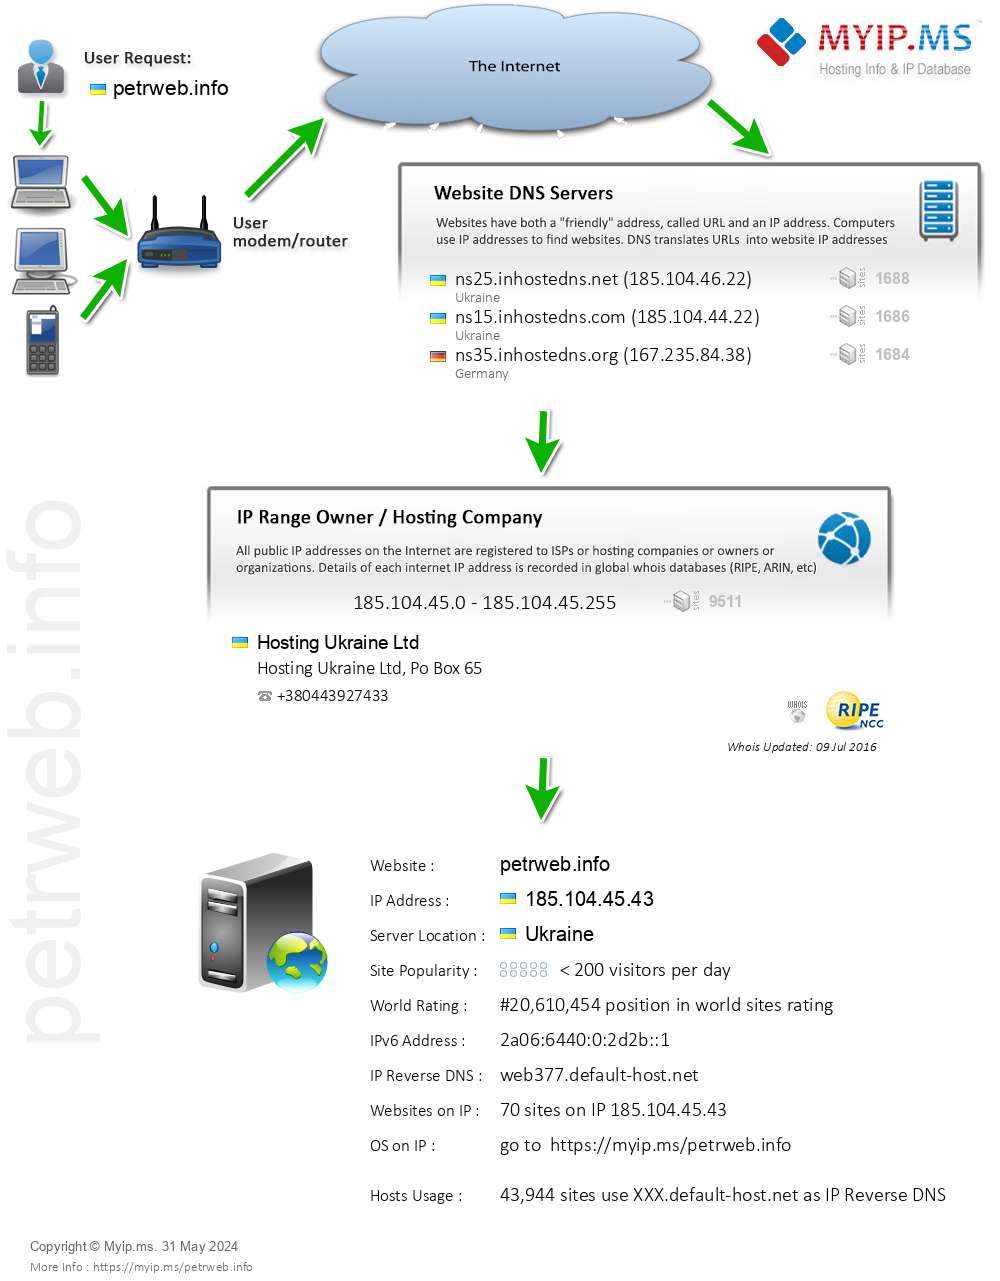 Petrweb.info - Website Hosting Visual IP Diagram